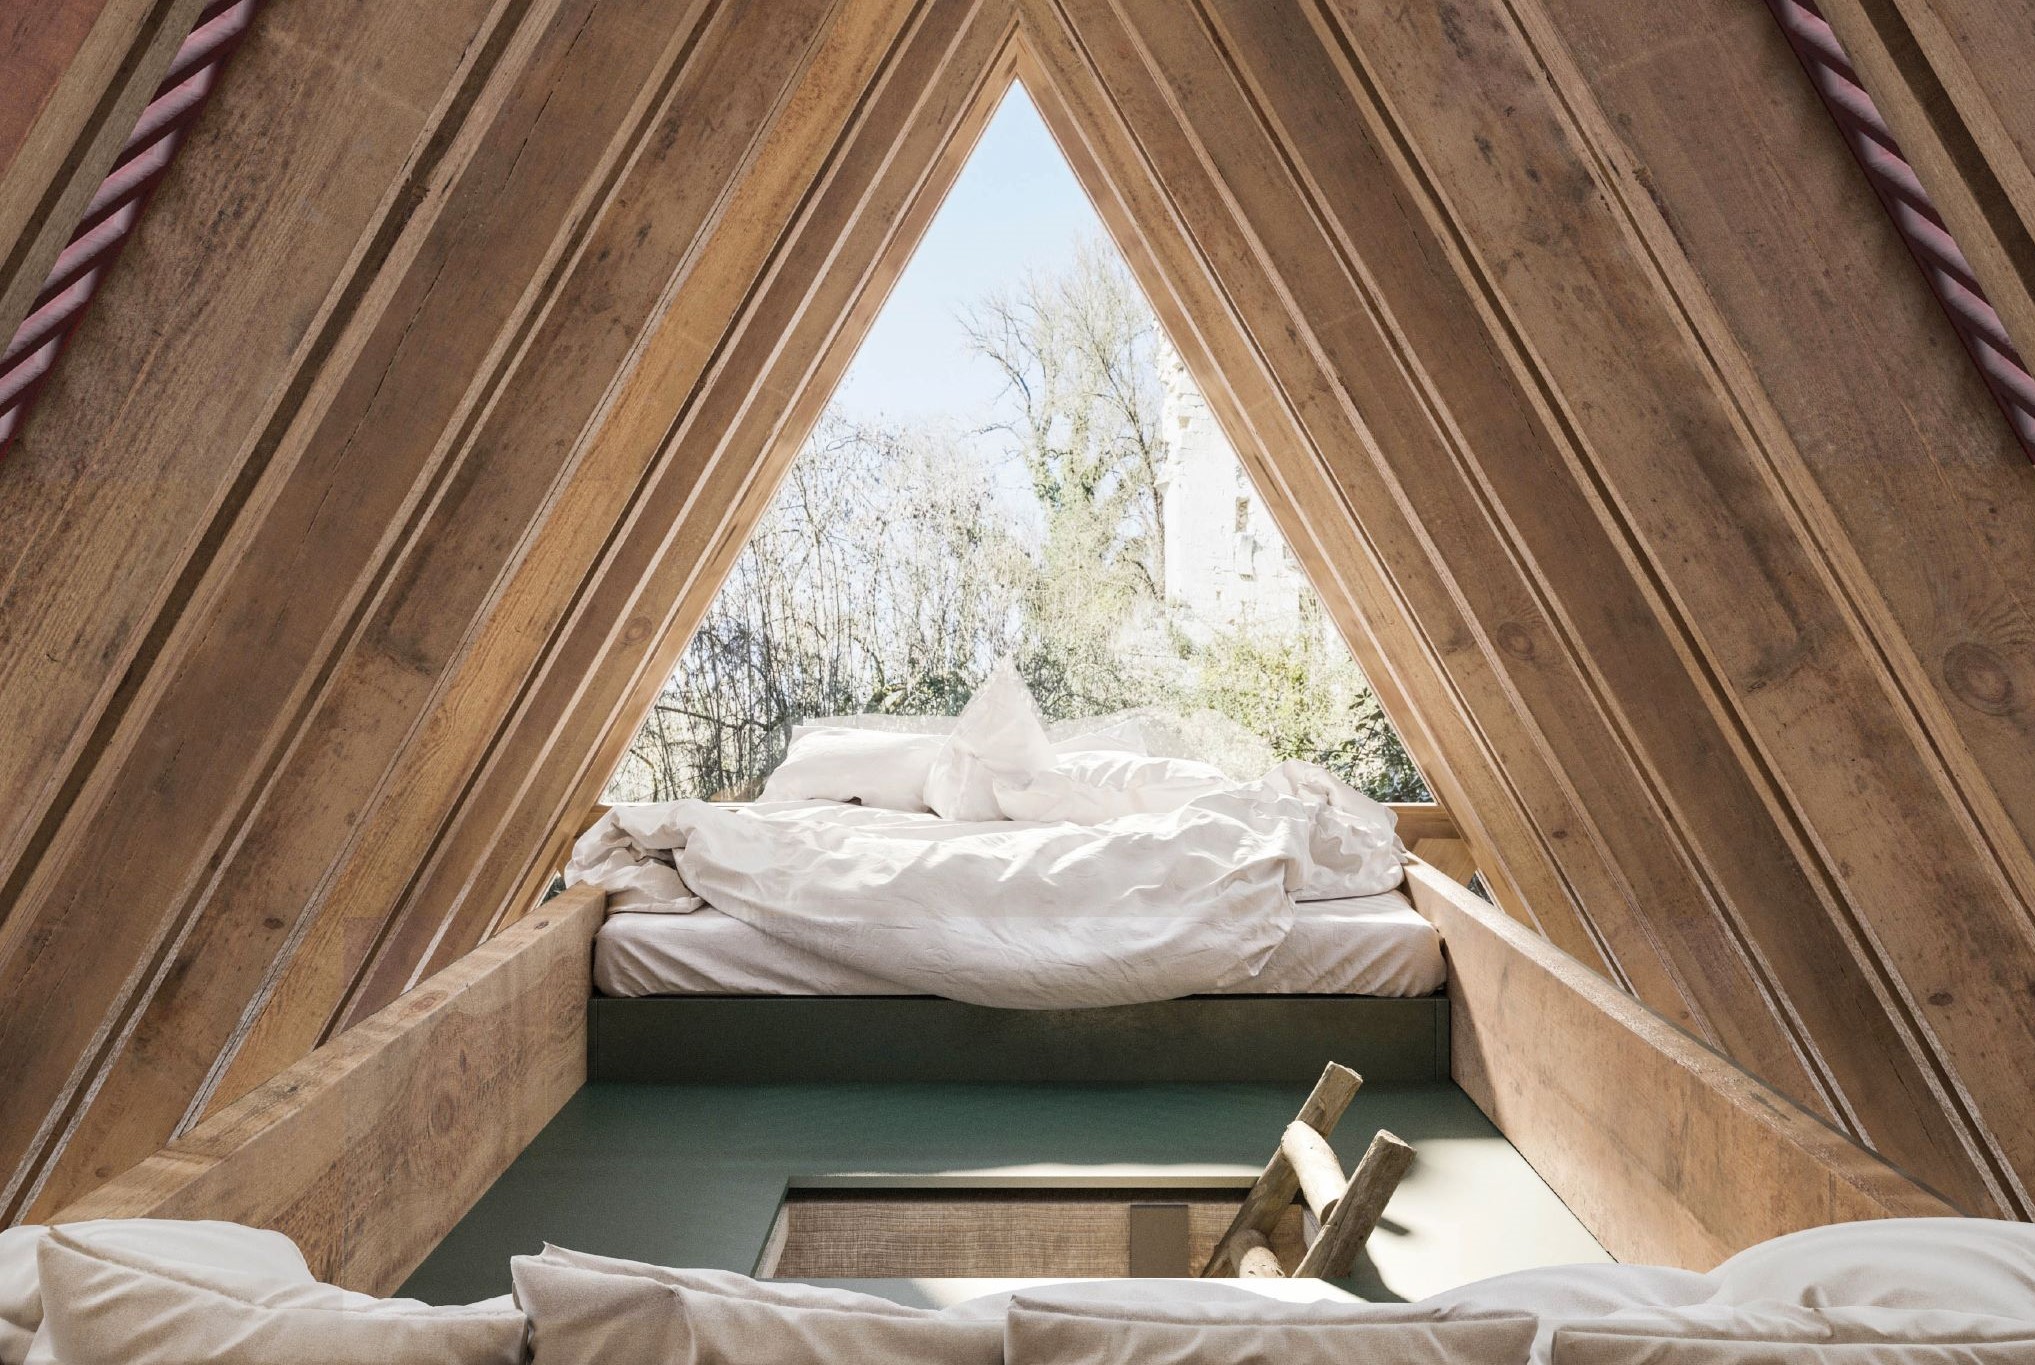 在河濱樹屋的上層，擺放有舒適的雙人床與沙發座椅營造渡假氛圍。